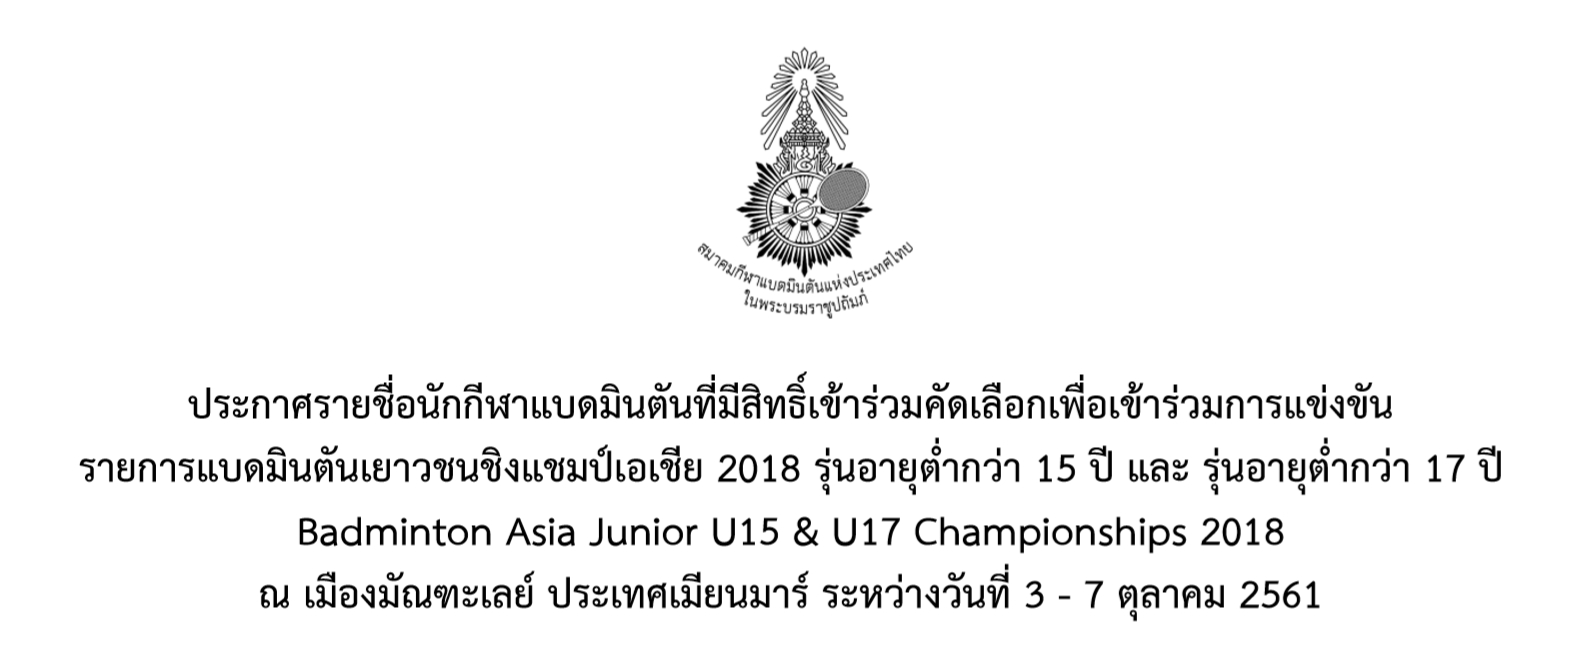 ประกาศรายชื่อนักกีฬาแบดมินตันที่มีสิทธิ์เข้าร่วมคัดเลือกเพื่อแข่งขัน Badminton Asia Junior U15 & U17 Championships 2018